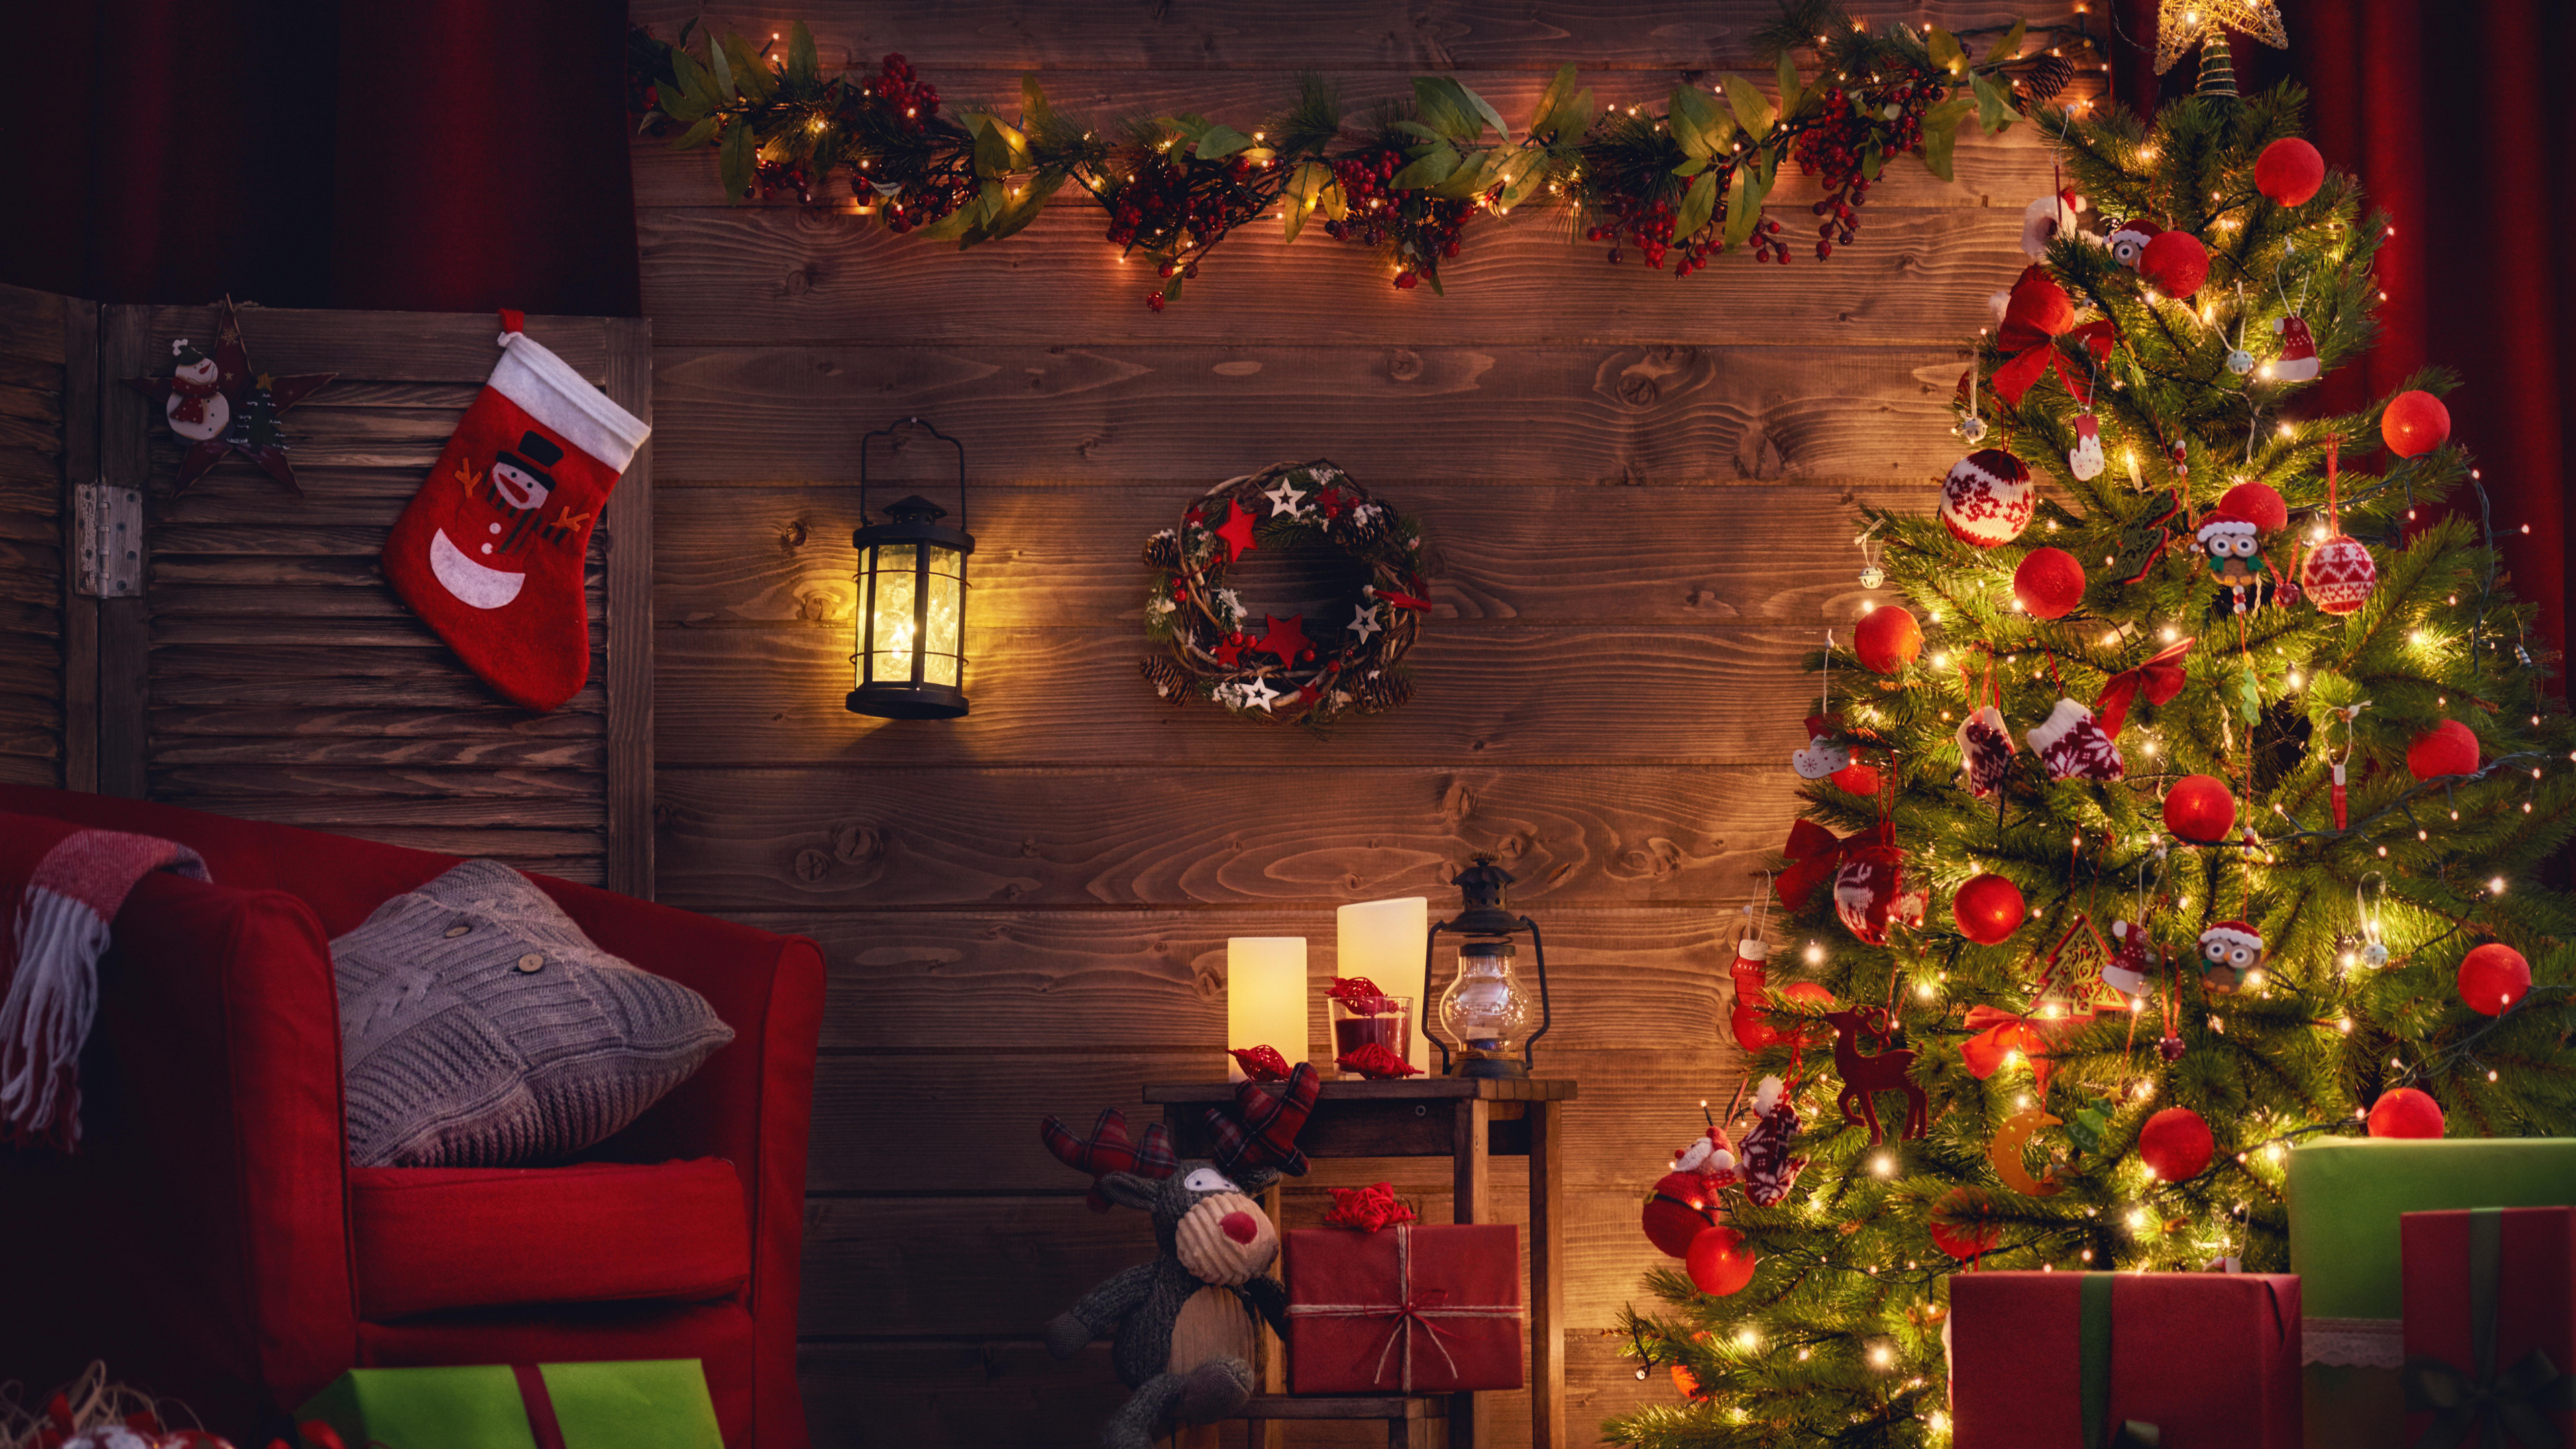 圣诞树, 圣诞节那天, 圣诞装饰, 圣诞节, 圣诞彩灯 壁纸 3840x2160 允许